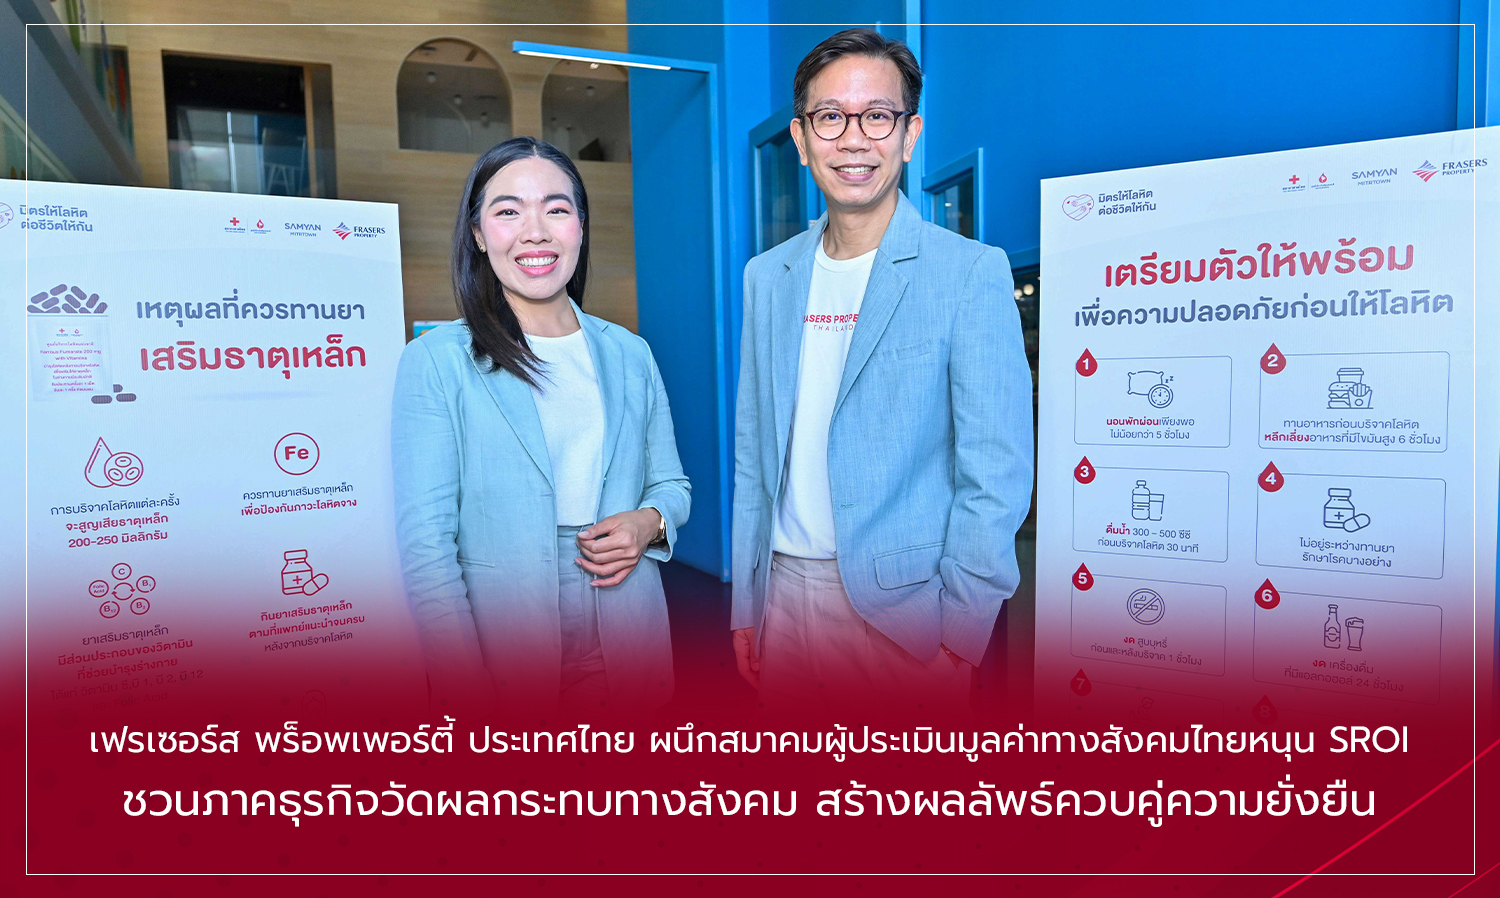 เฟรเซอร์ส พร็อพเพอร์ตี้ ประเทศไทย ผนึกสมาคมผู้ประเมินมูลค่าทางสังคมไทยหนุน SROI ชวนภาคธุรกิจวัดผลกระทบทางสังคม สร้างผลลัพธ์ควบคู่ความยั่งยืน